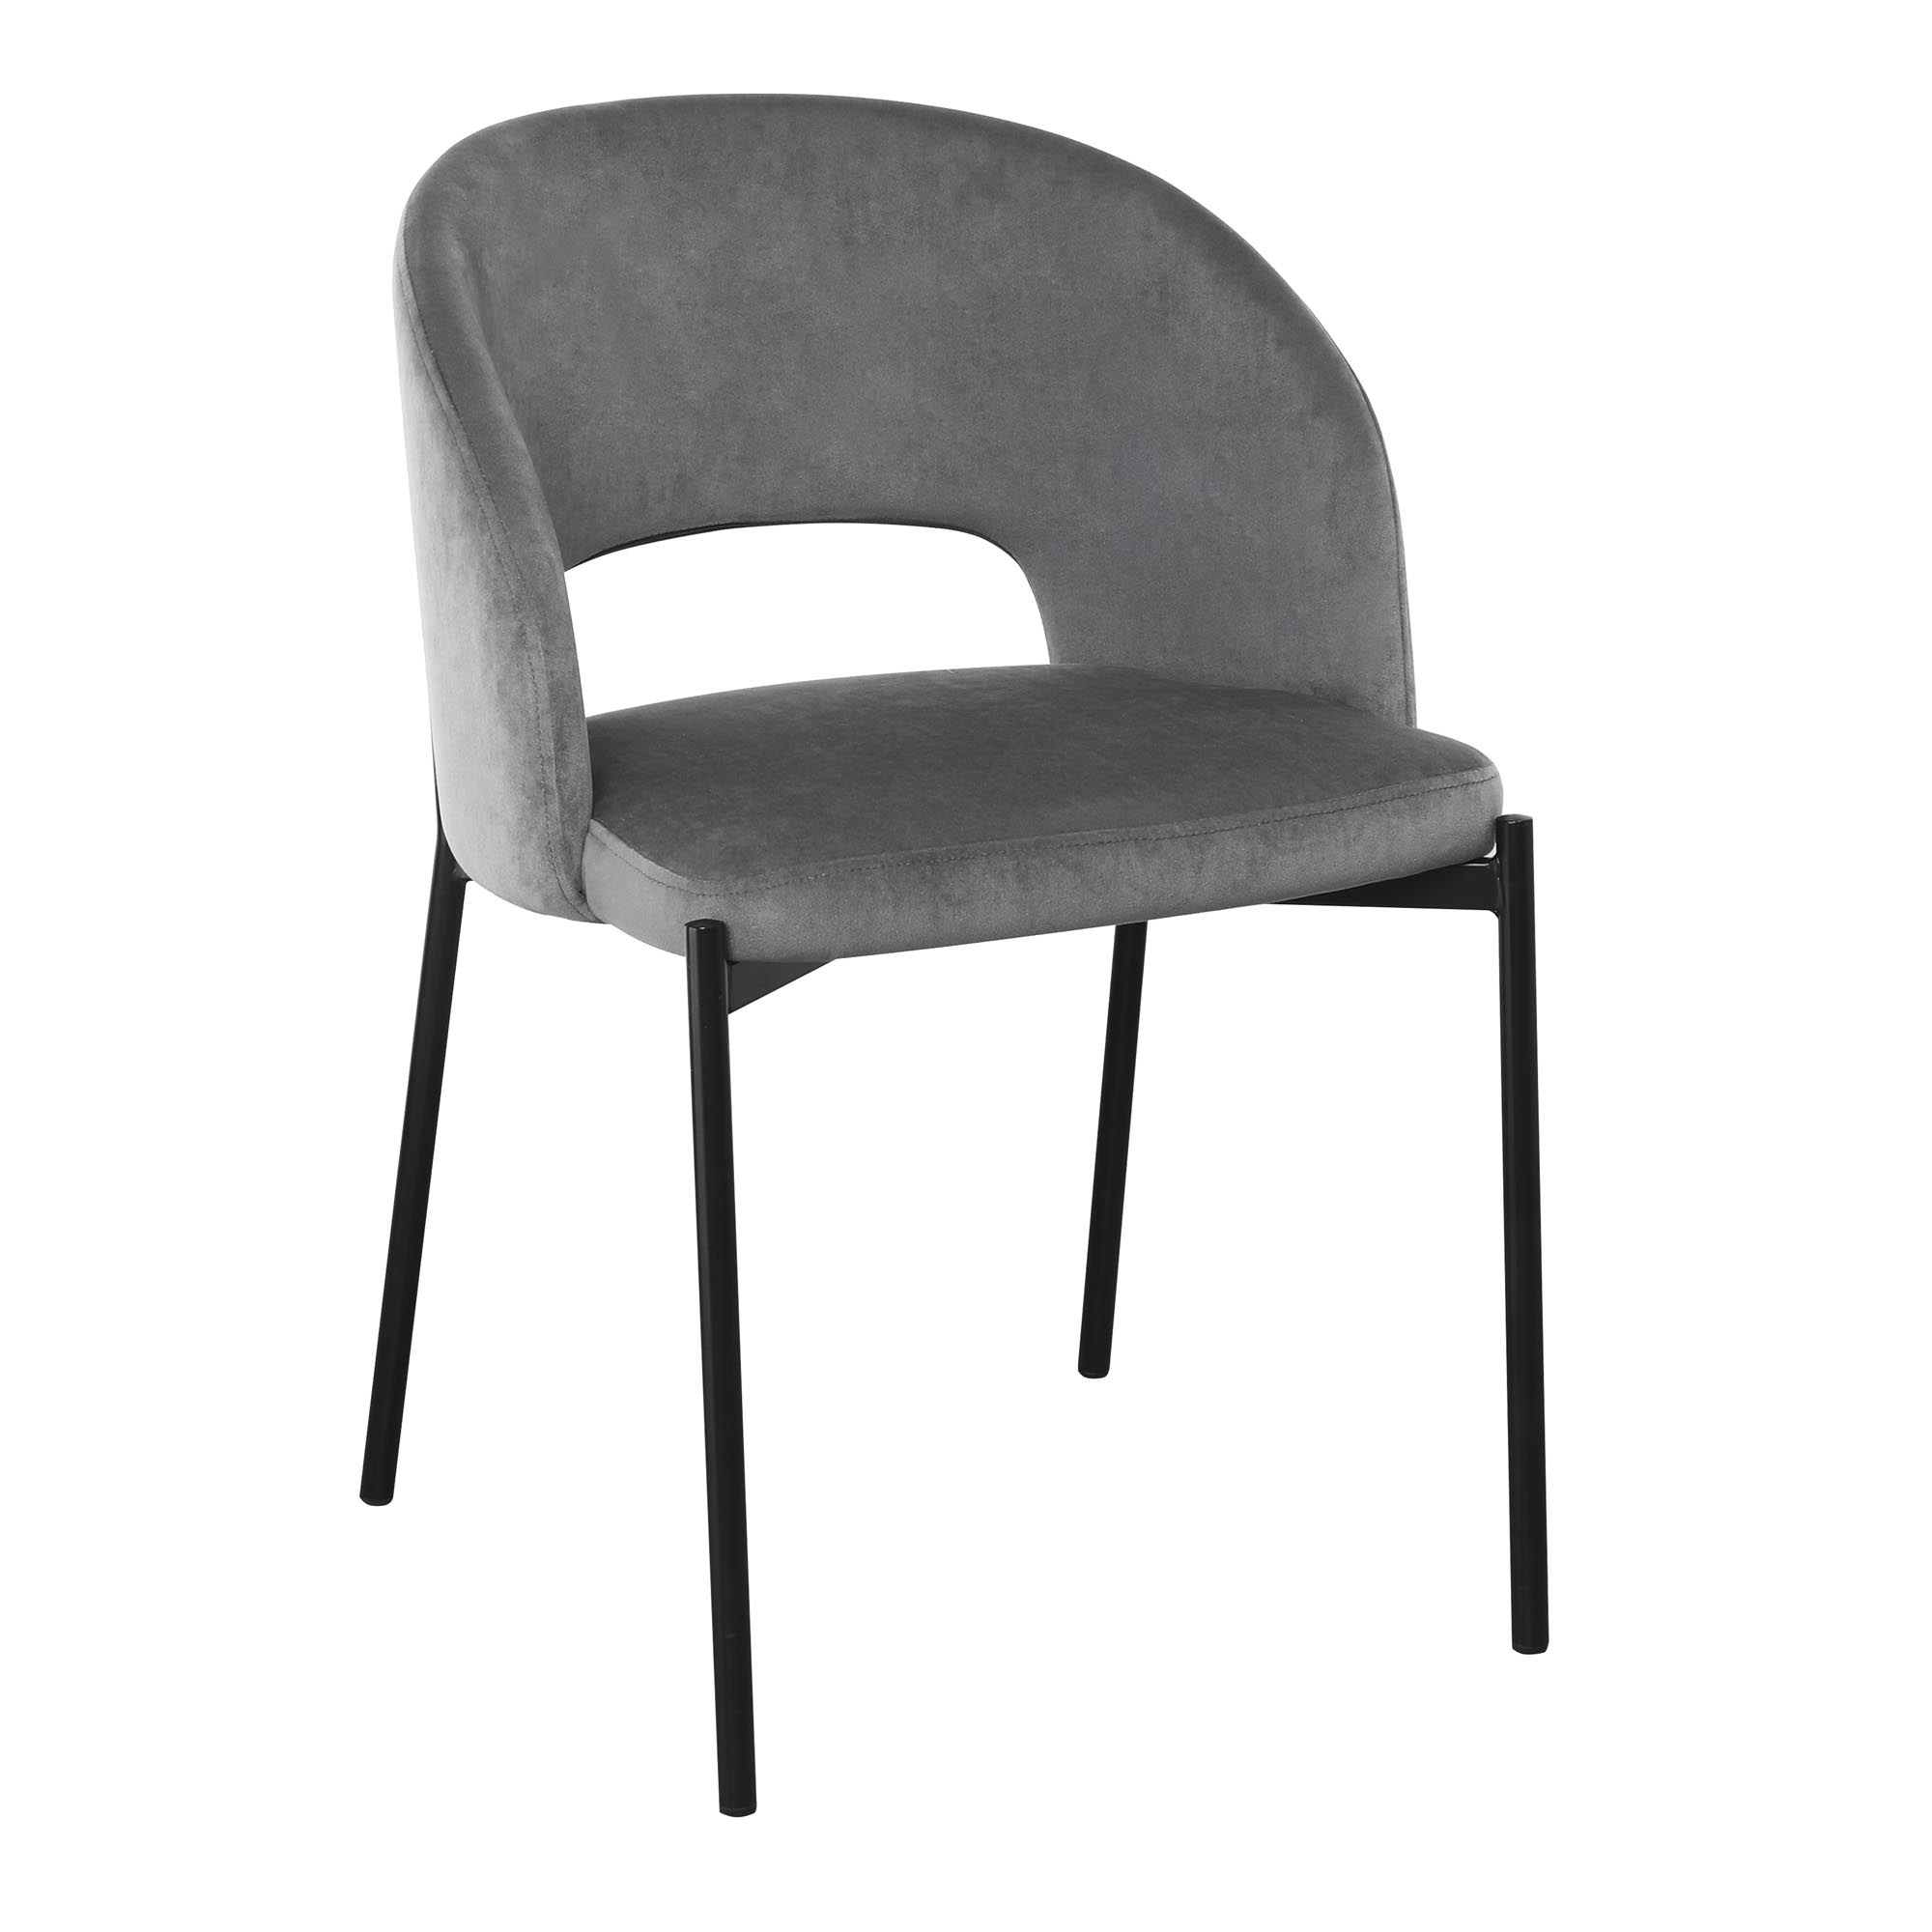 K455 stolica, boja: siva